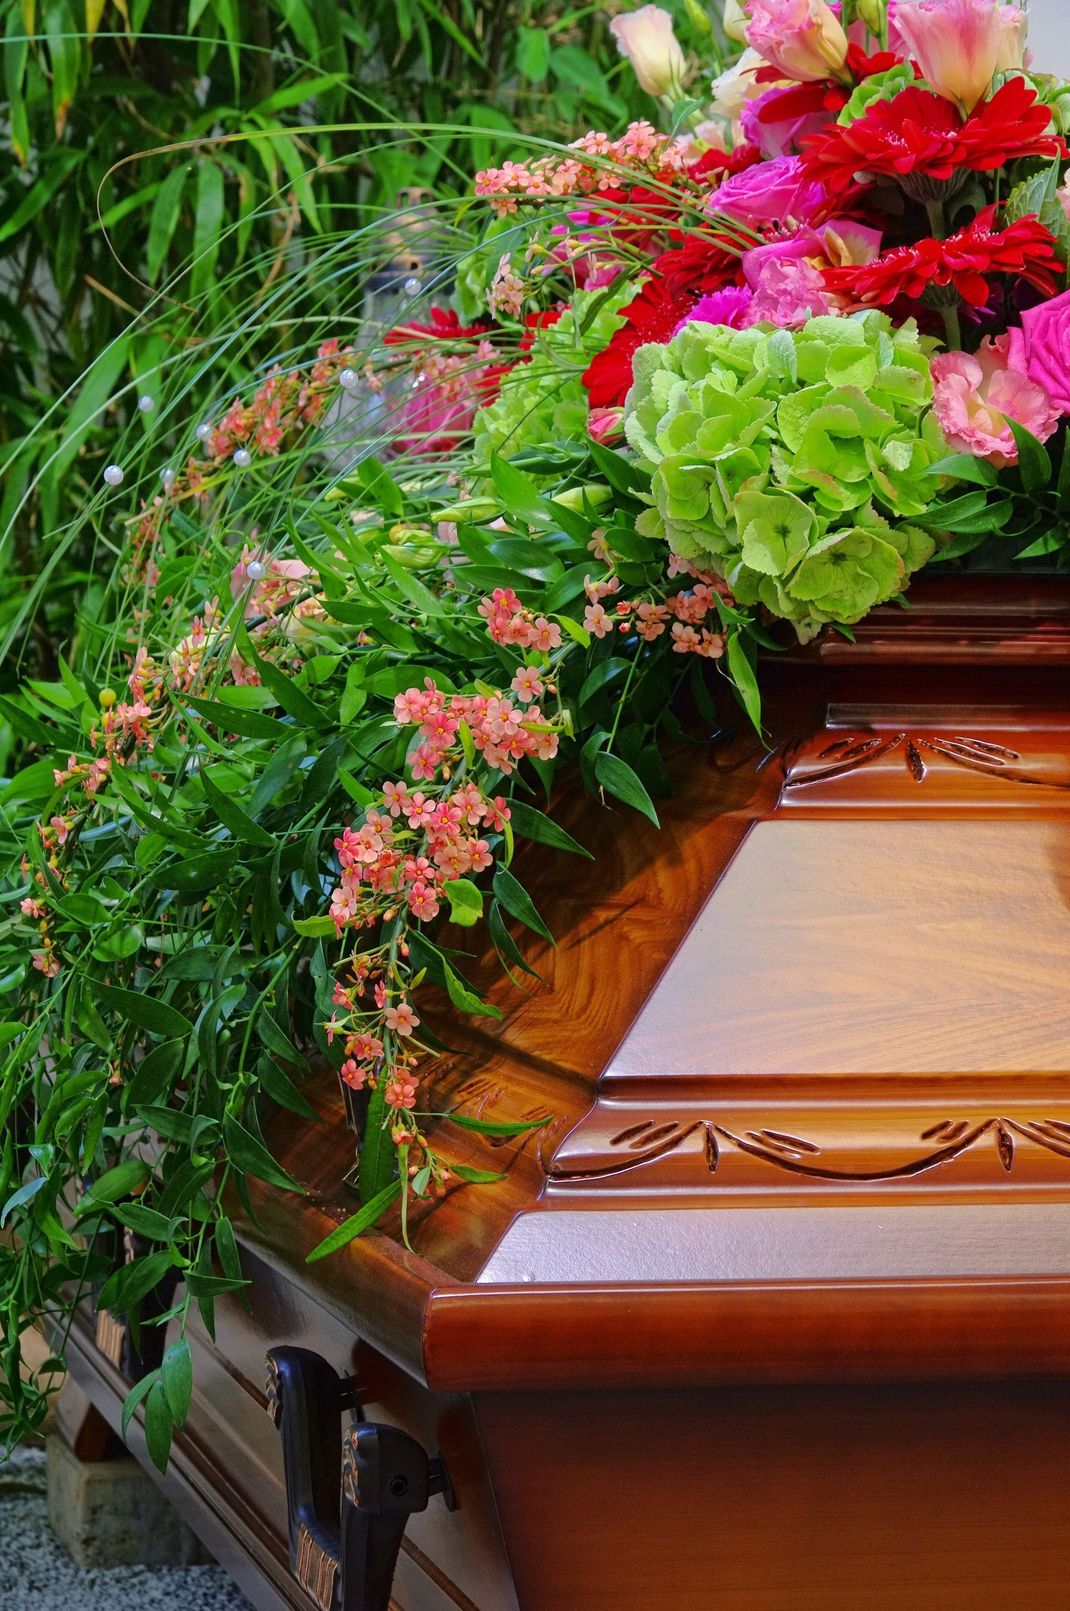 fiori per funerali